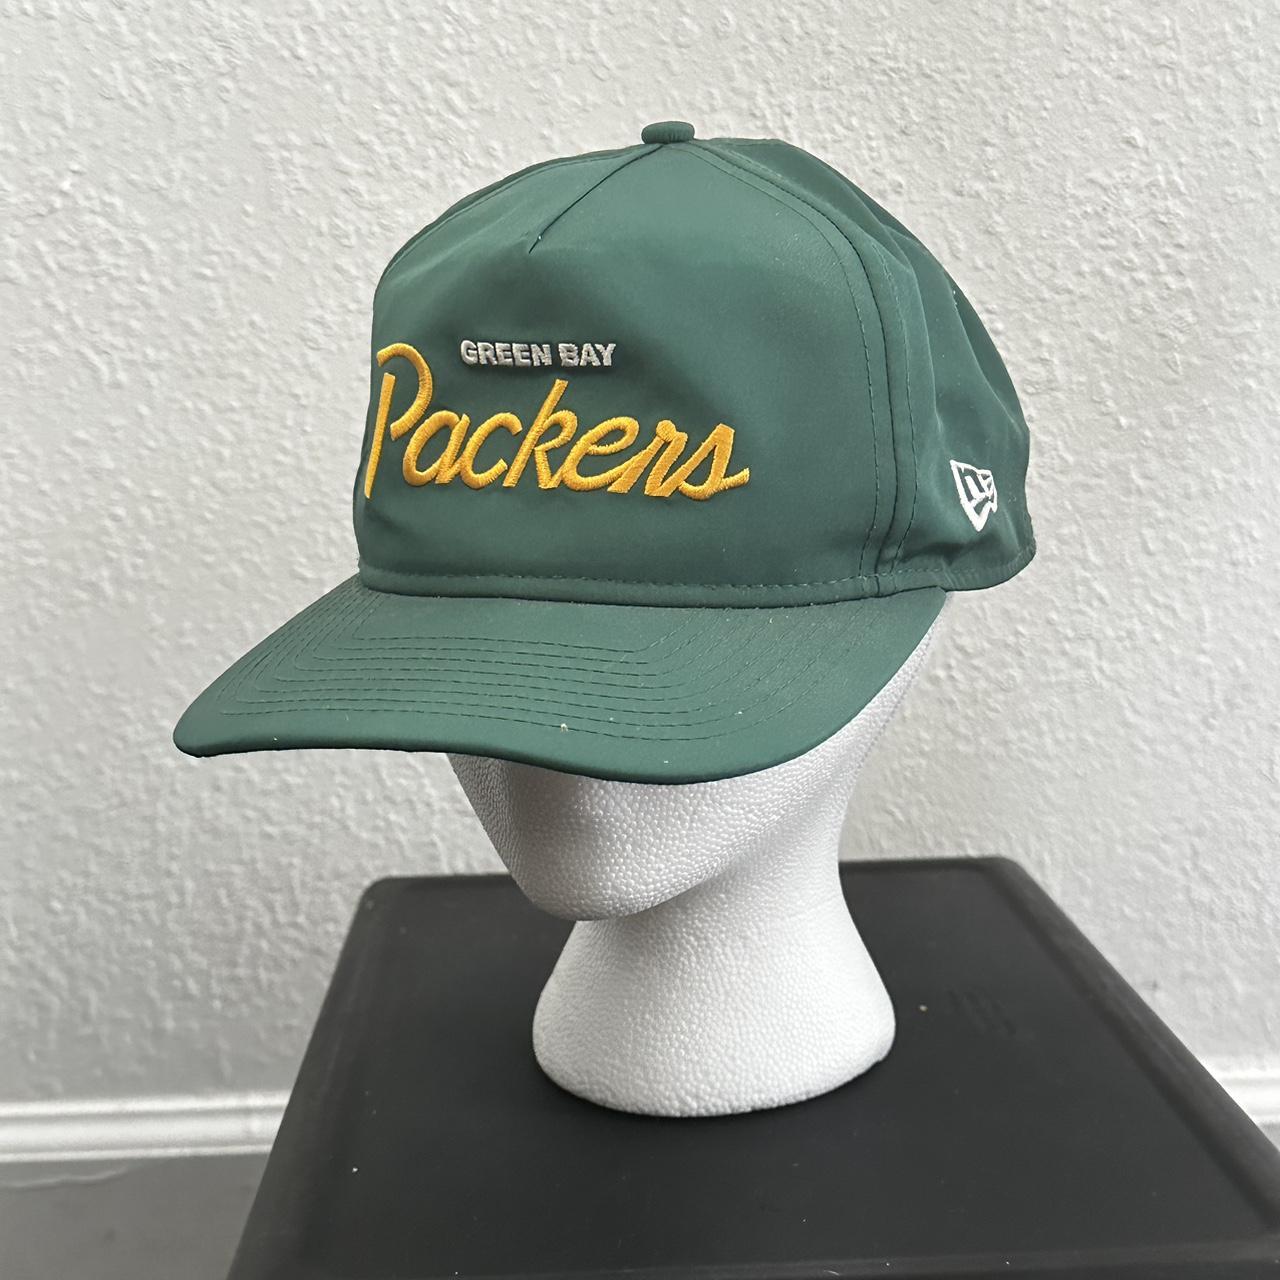 Vintage Greenbay Packers Hat - Depop